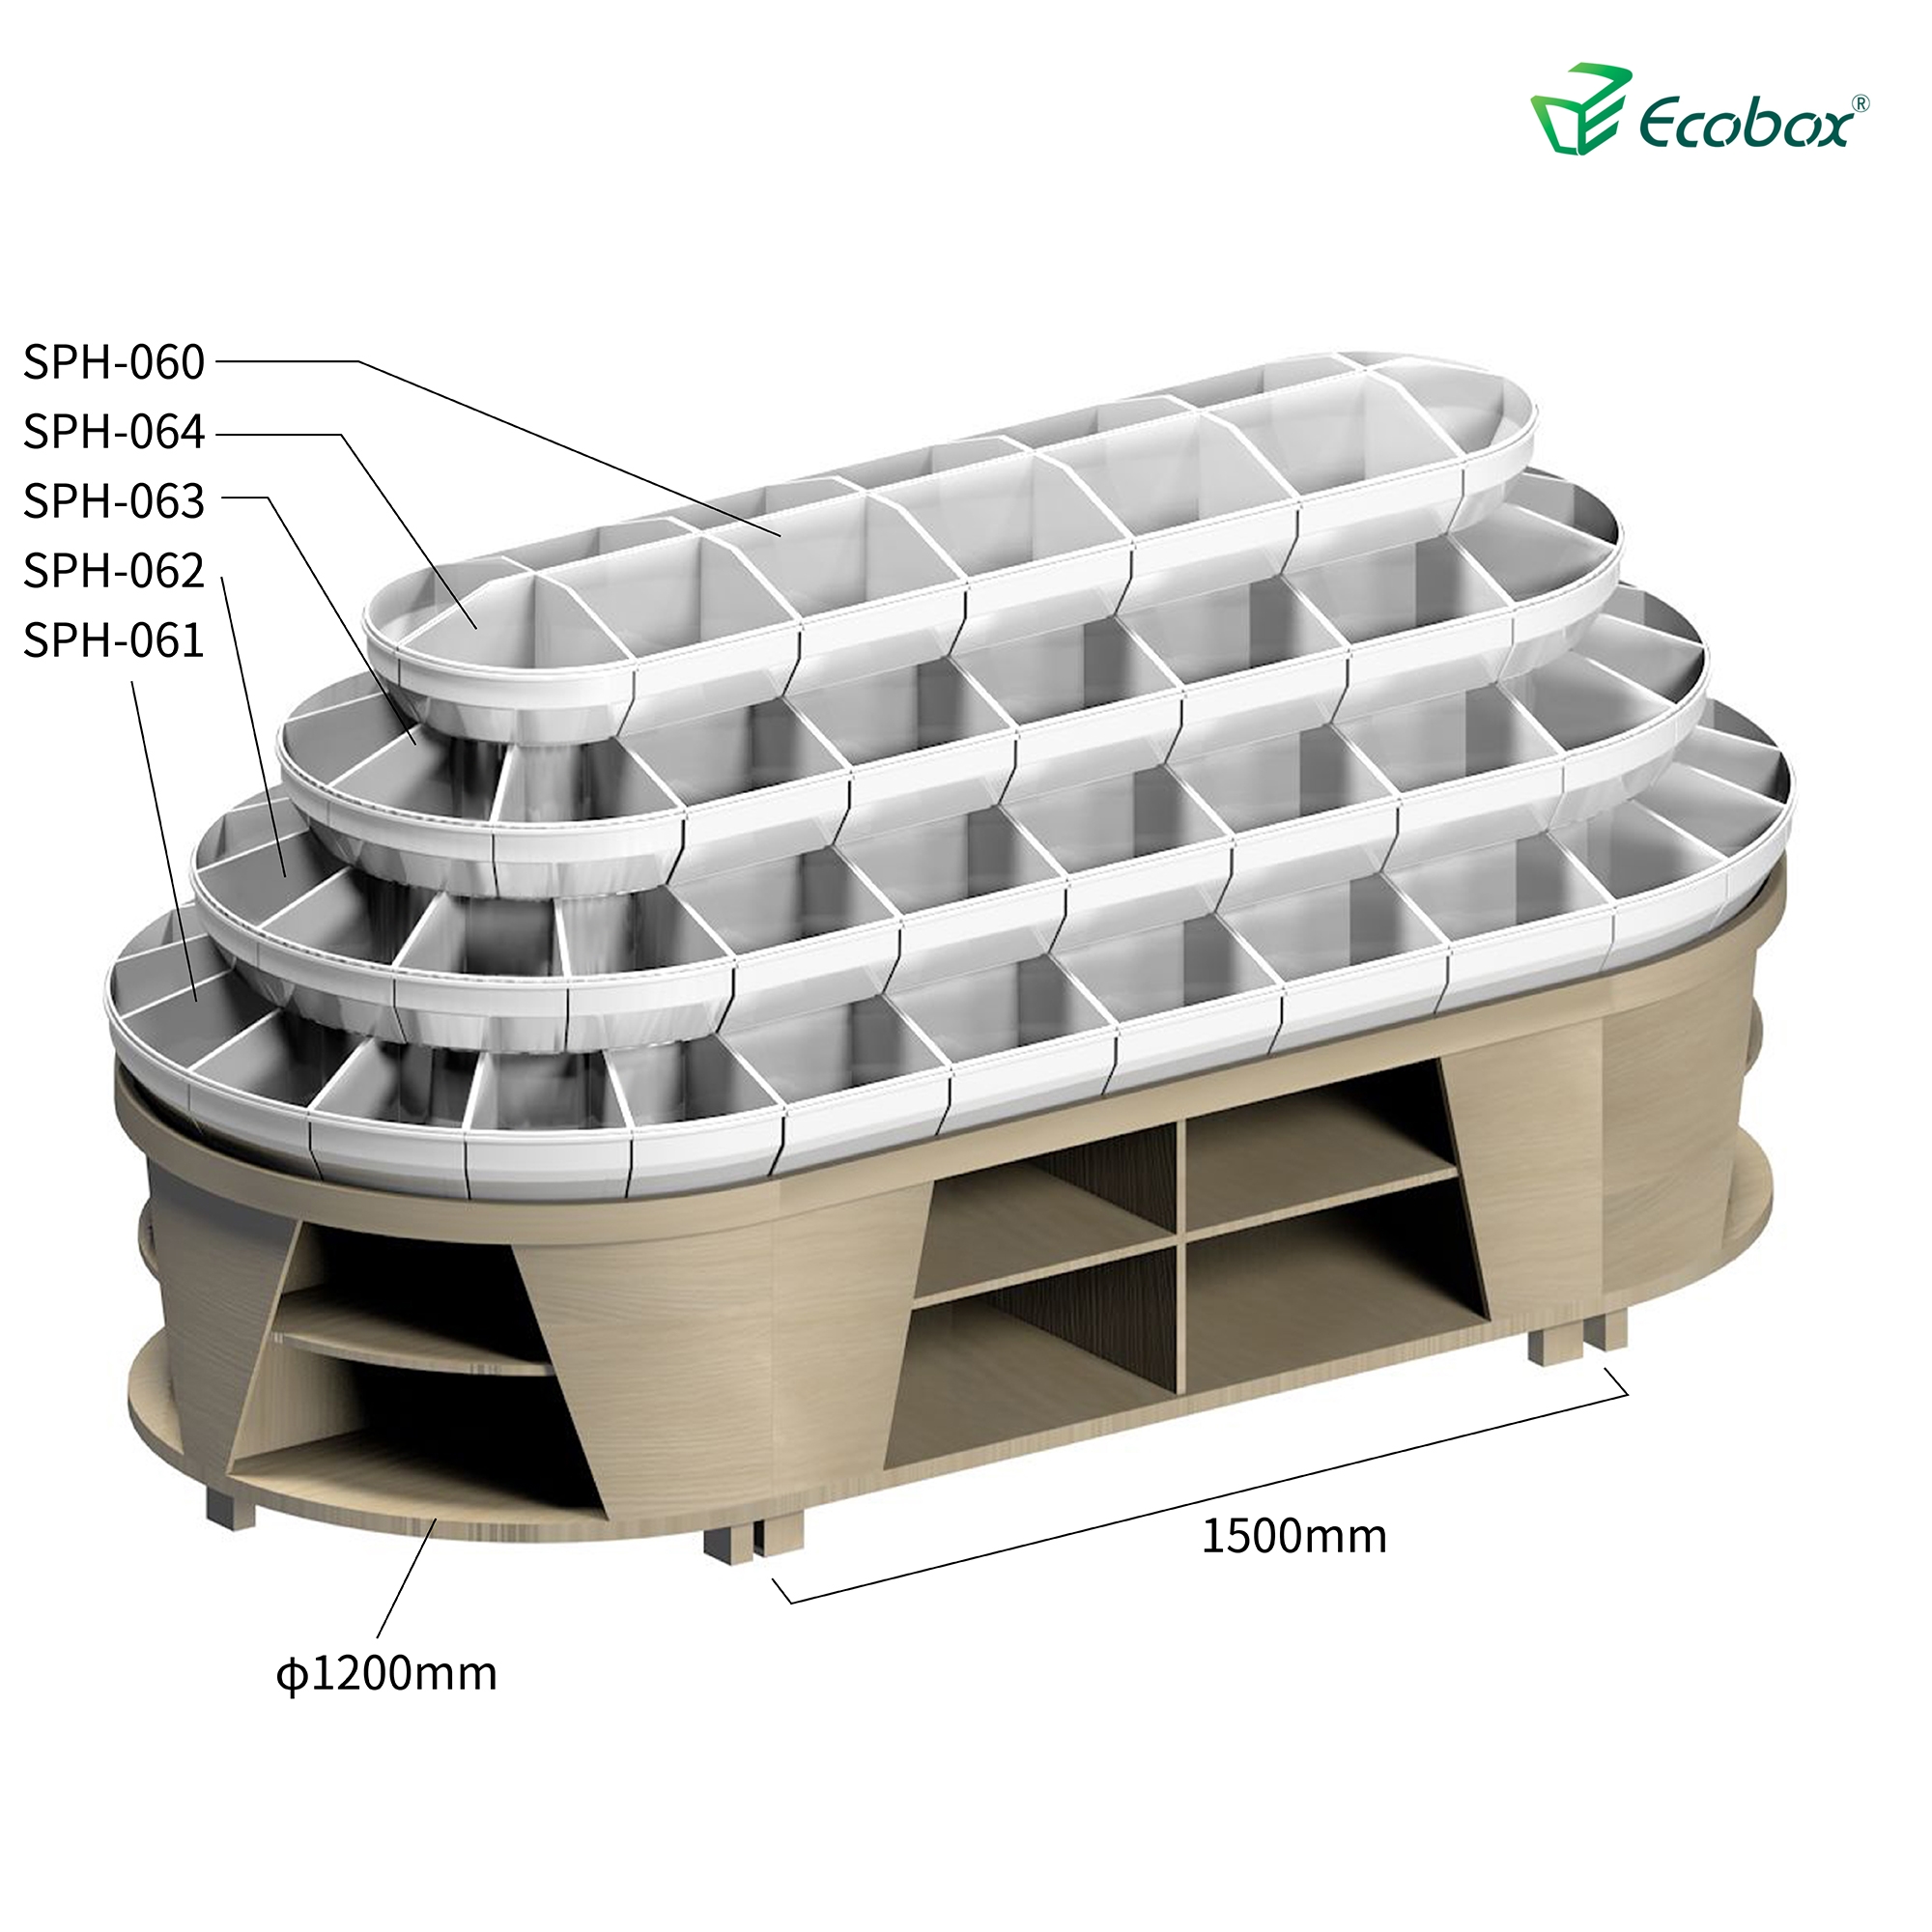 Ecobox G010 Supermarkt-Lebensmitteldisplays mit Ecobox-Supermarktbehältern